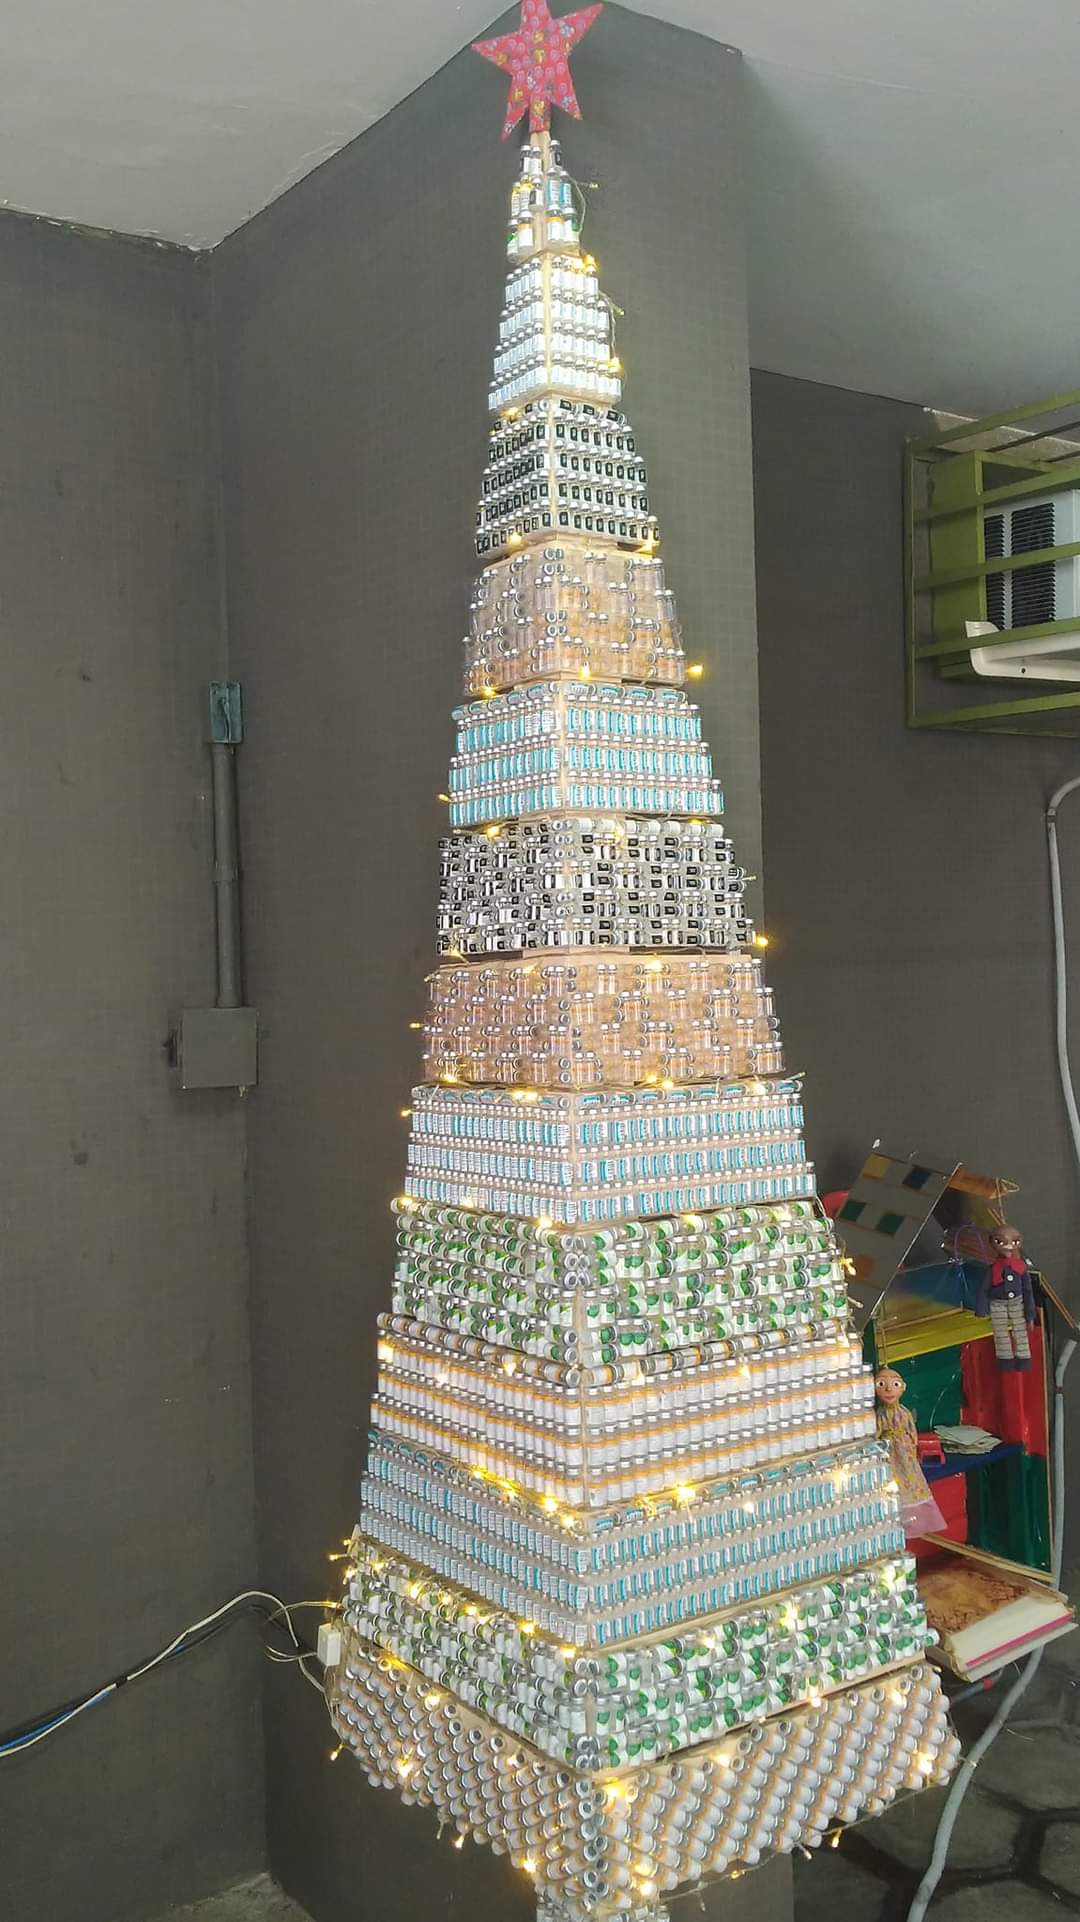 Árvore de Natal é montada com frascos vazios de vacina em posto de saúde de  Santa Teresa - Jornal O Globo